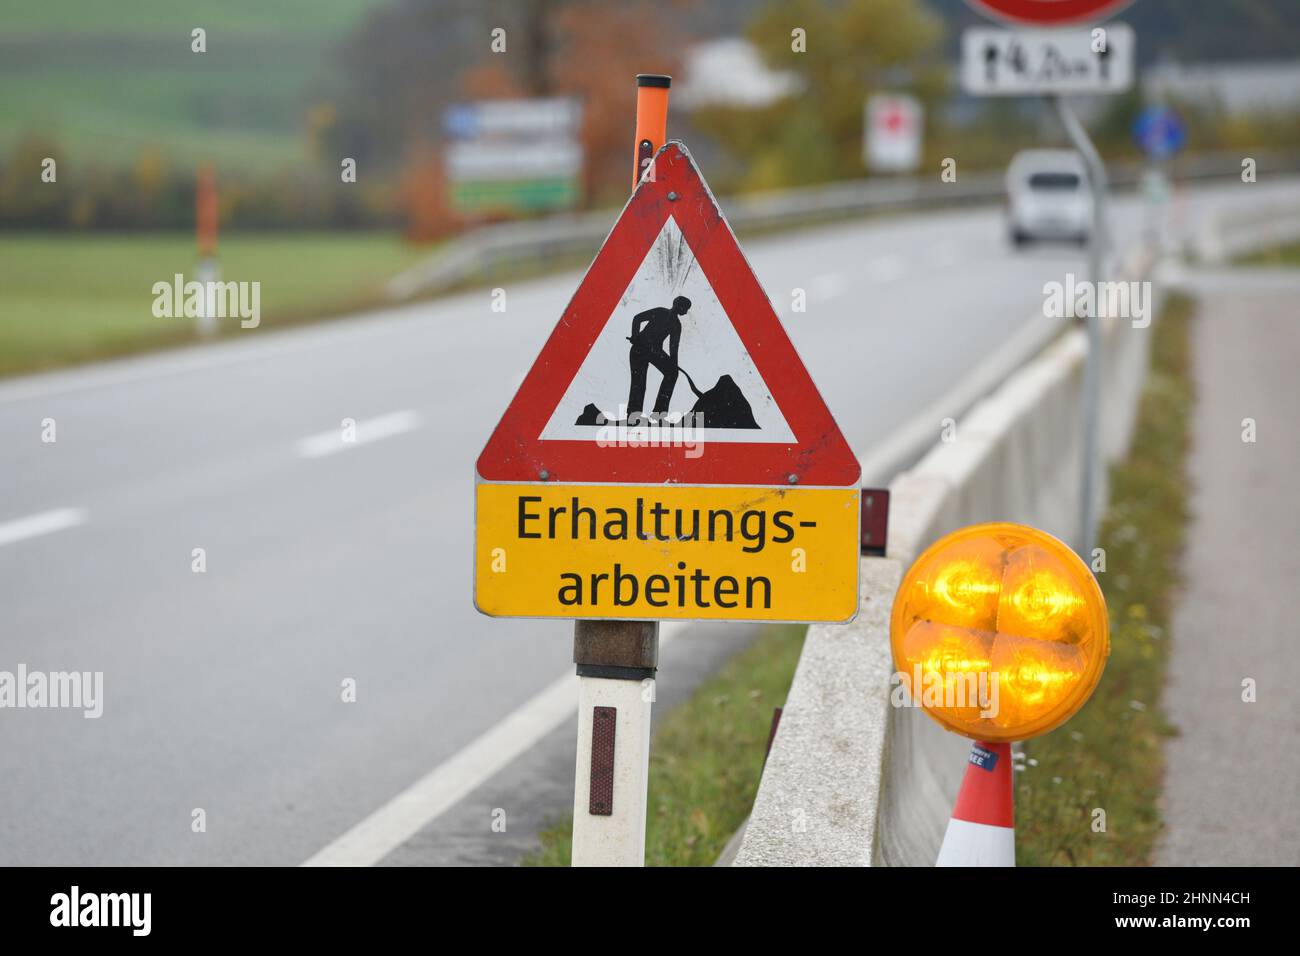 Schild 'Erhaltungsarbeiten' auf einer Straße in Österreich, Europa - Sign 'Conservation works' on a street in Austria, Europe Stock Photo